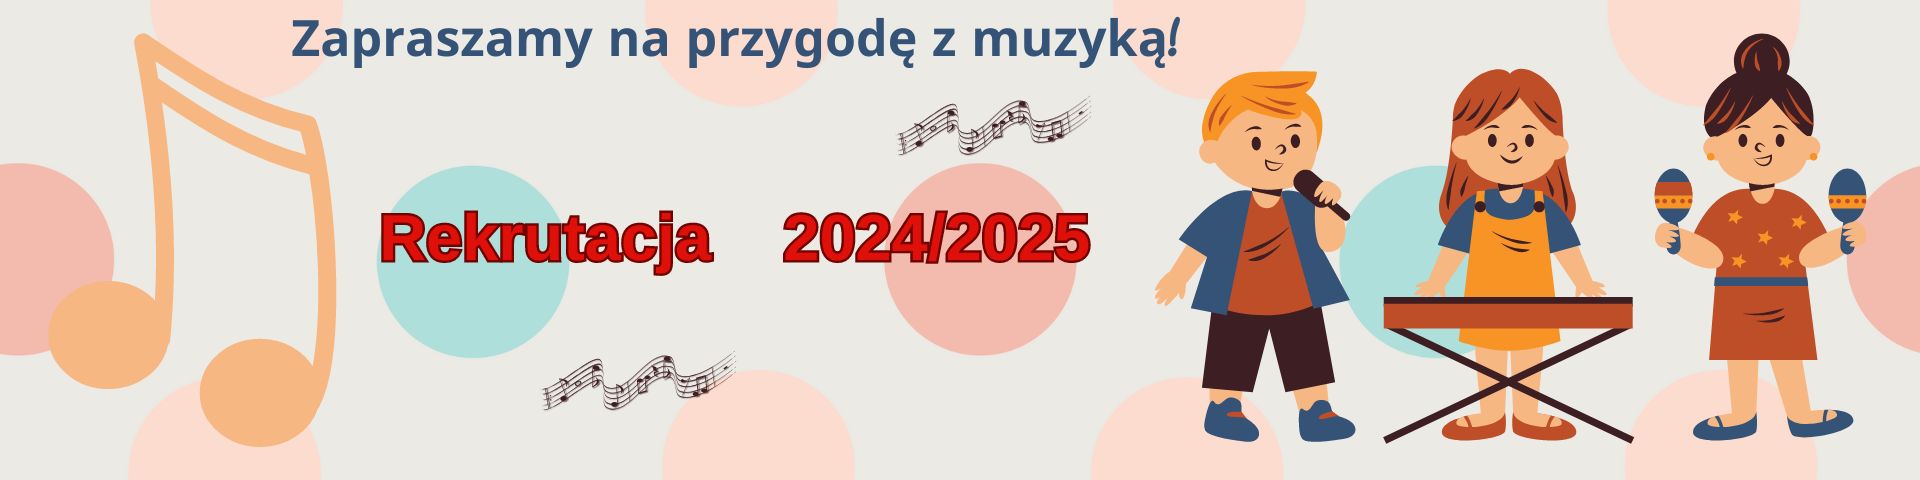 Infografika, kolorowy baner informacyjny Rekrutacja 2024/2025, treść banera dzieci grające na instrumentach oraz rozproszone nutki jako element grafiki